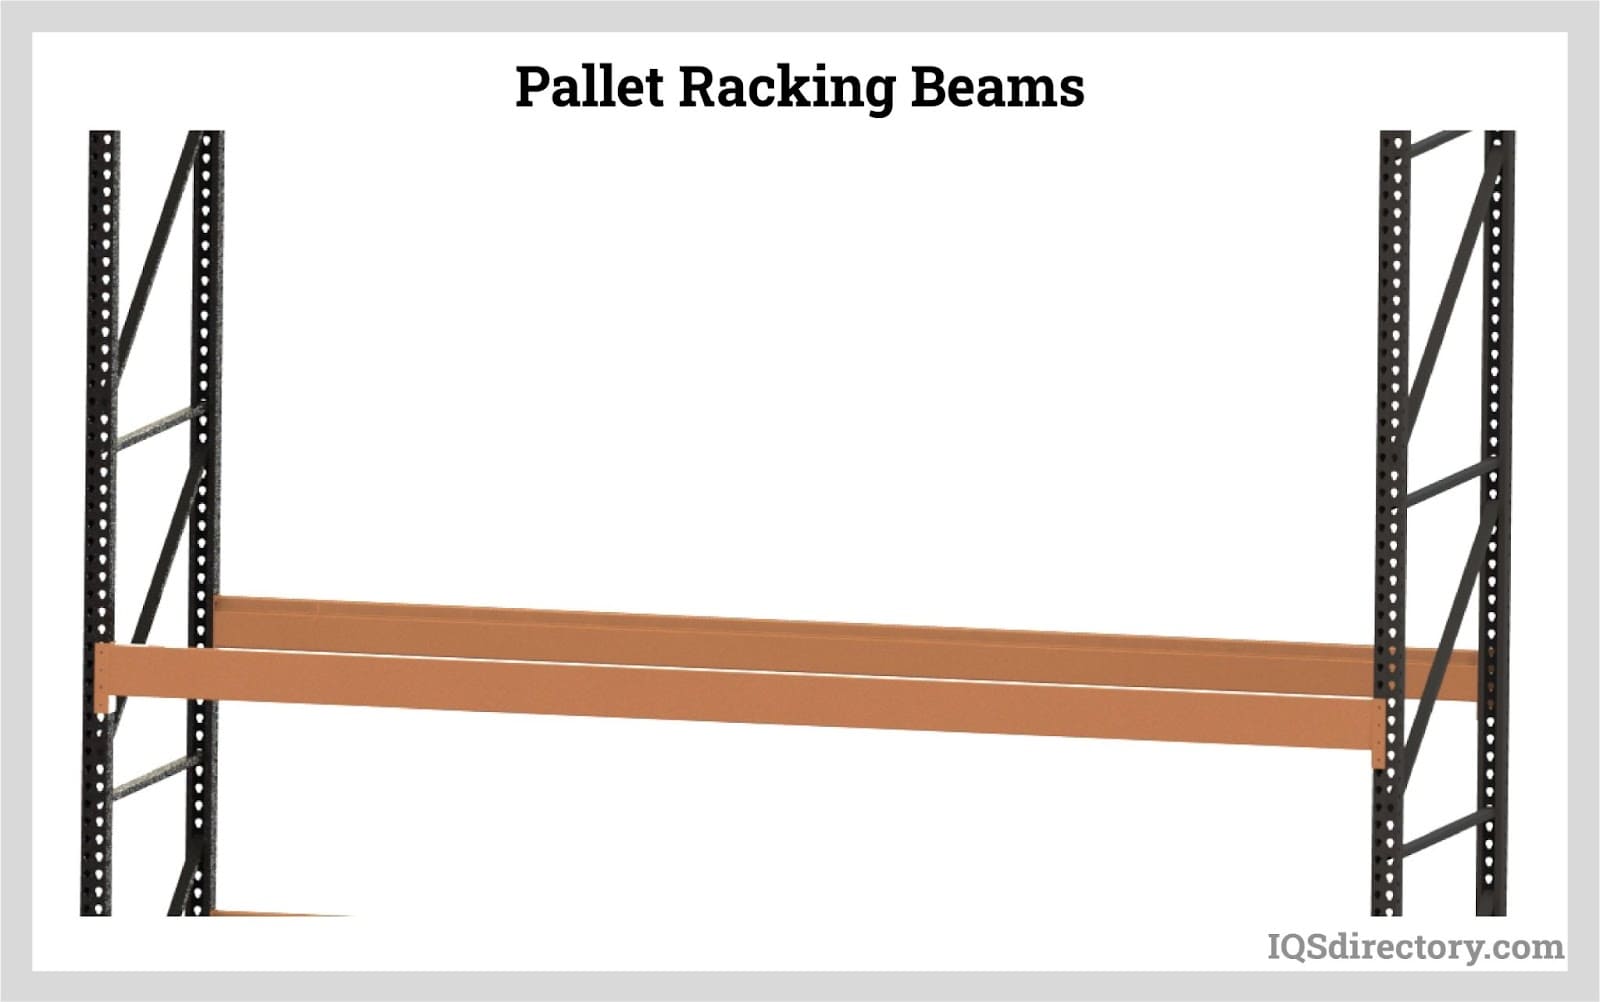 Pallet racking